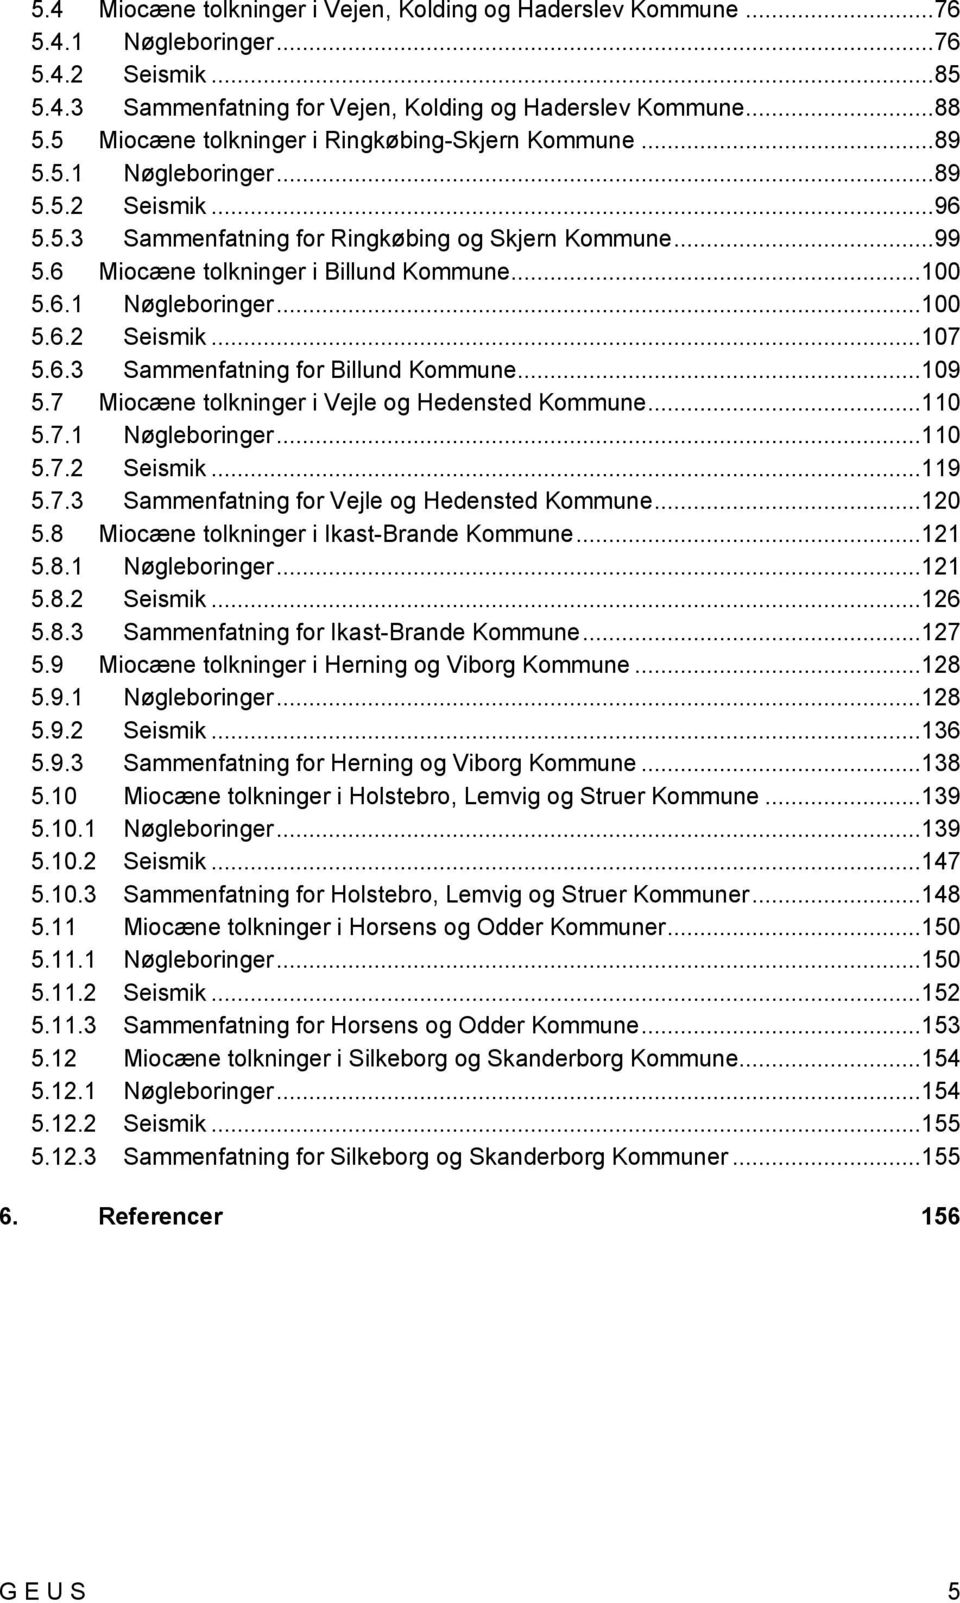 6 Miocæne tolkninger i Billund Kommune...100 5.6.1 Nøgleboringer...100 5.6.2 Seismik...107 5.6.3 Sammenfatning for Billund Kommune...109 5.7 Miocæne tolkninger i Vejle og Hedensted Kommune...110 5.7.1 Nøgleboringer...110 5.7.2 Seismik...119 5.